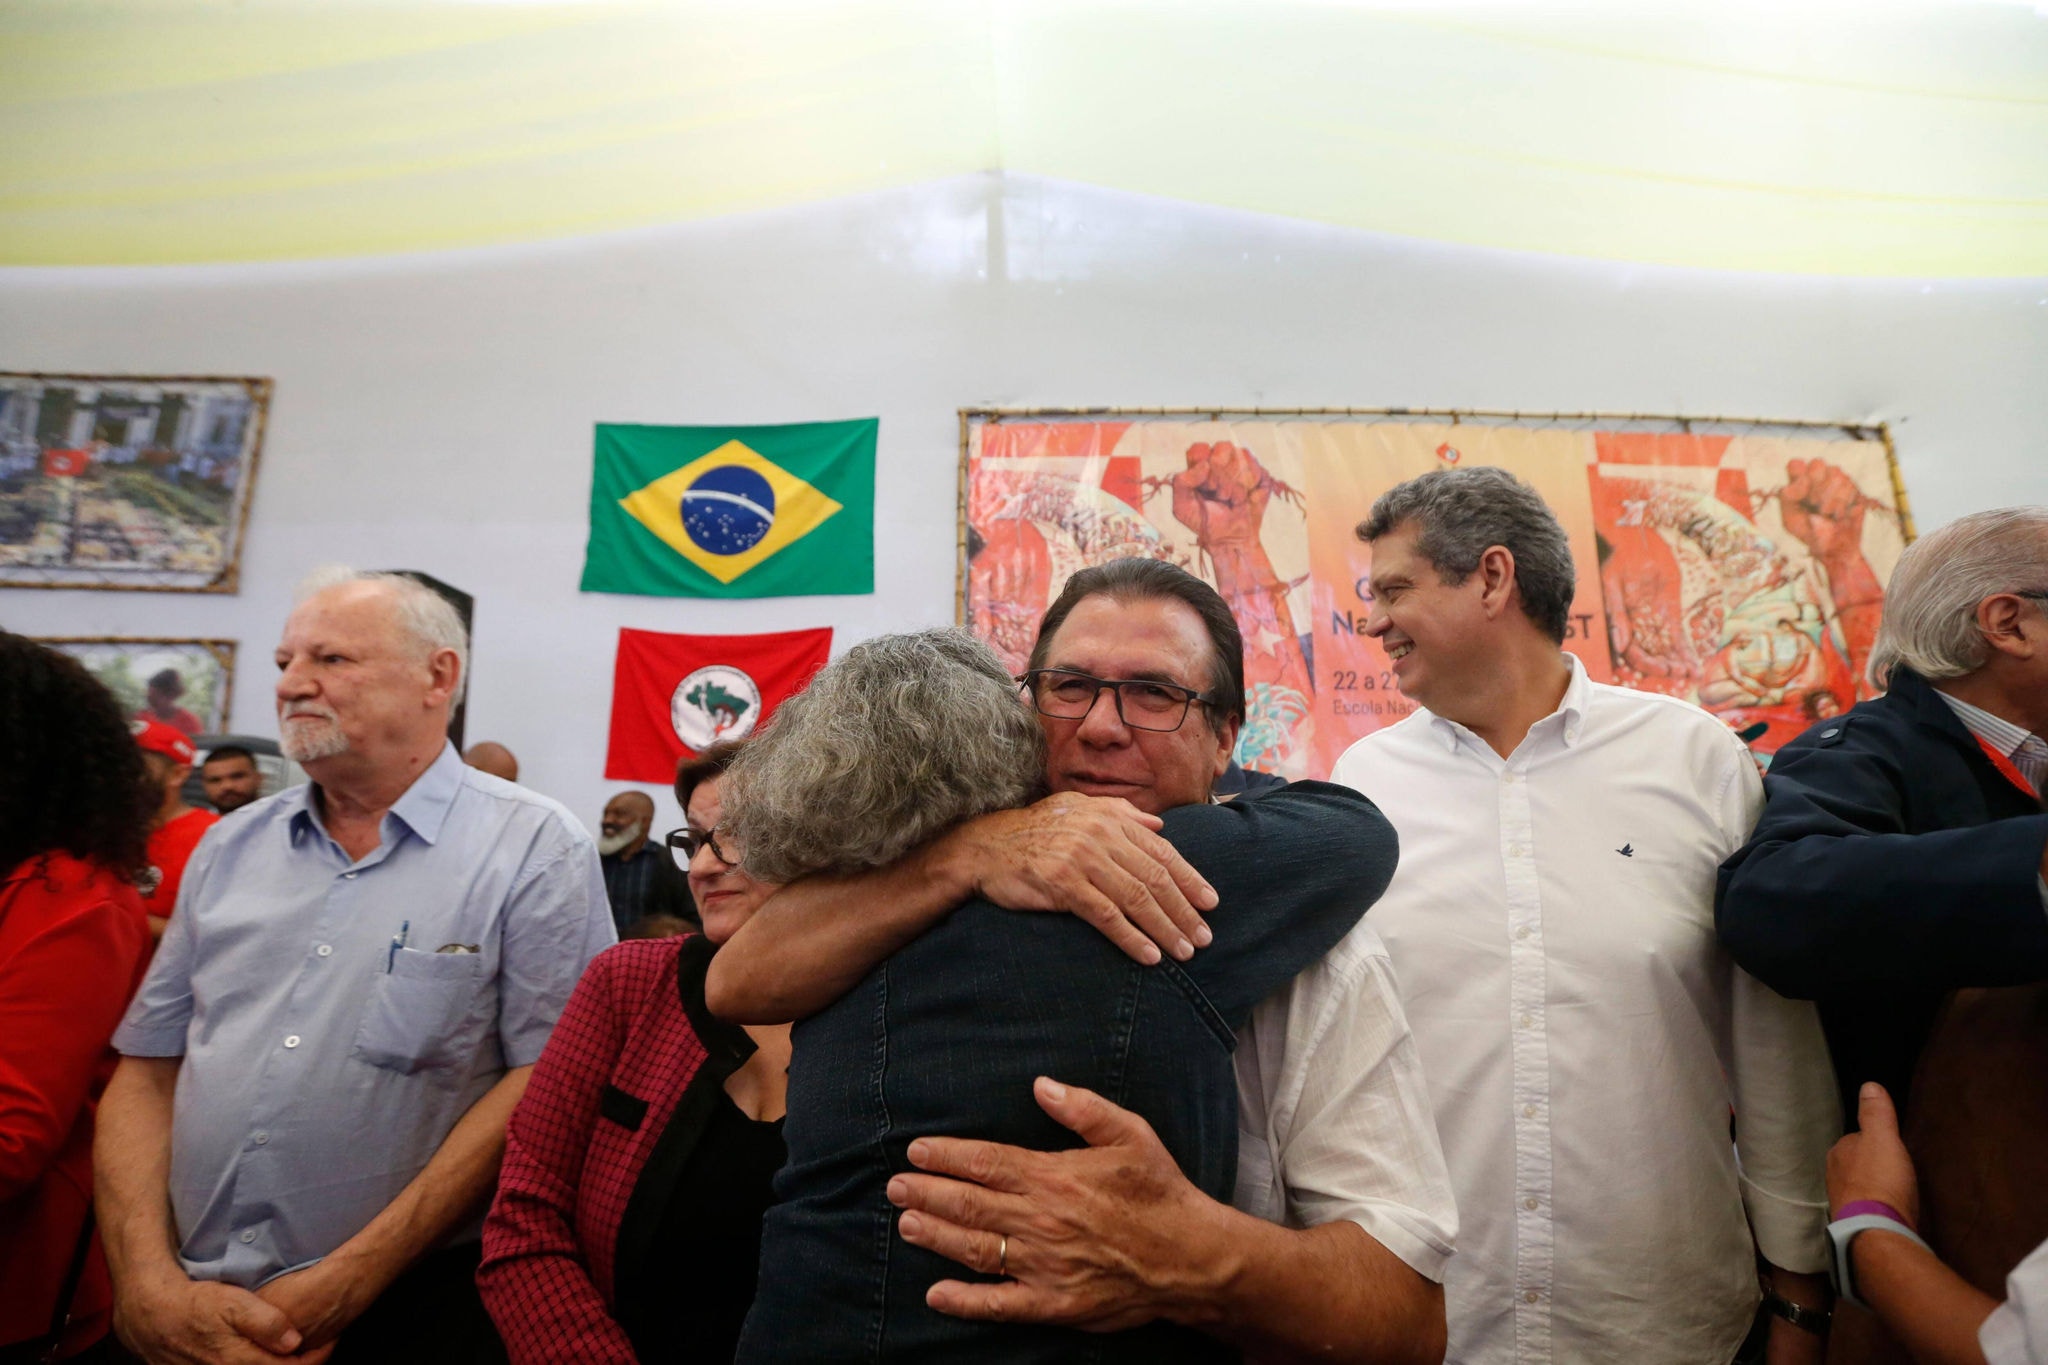 Ministro do Trabalho e Emprego, Luiz Marinho, durante evento em celebração aos 40 anos do MST, em Guararema, interior de São Paulo